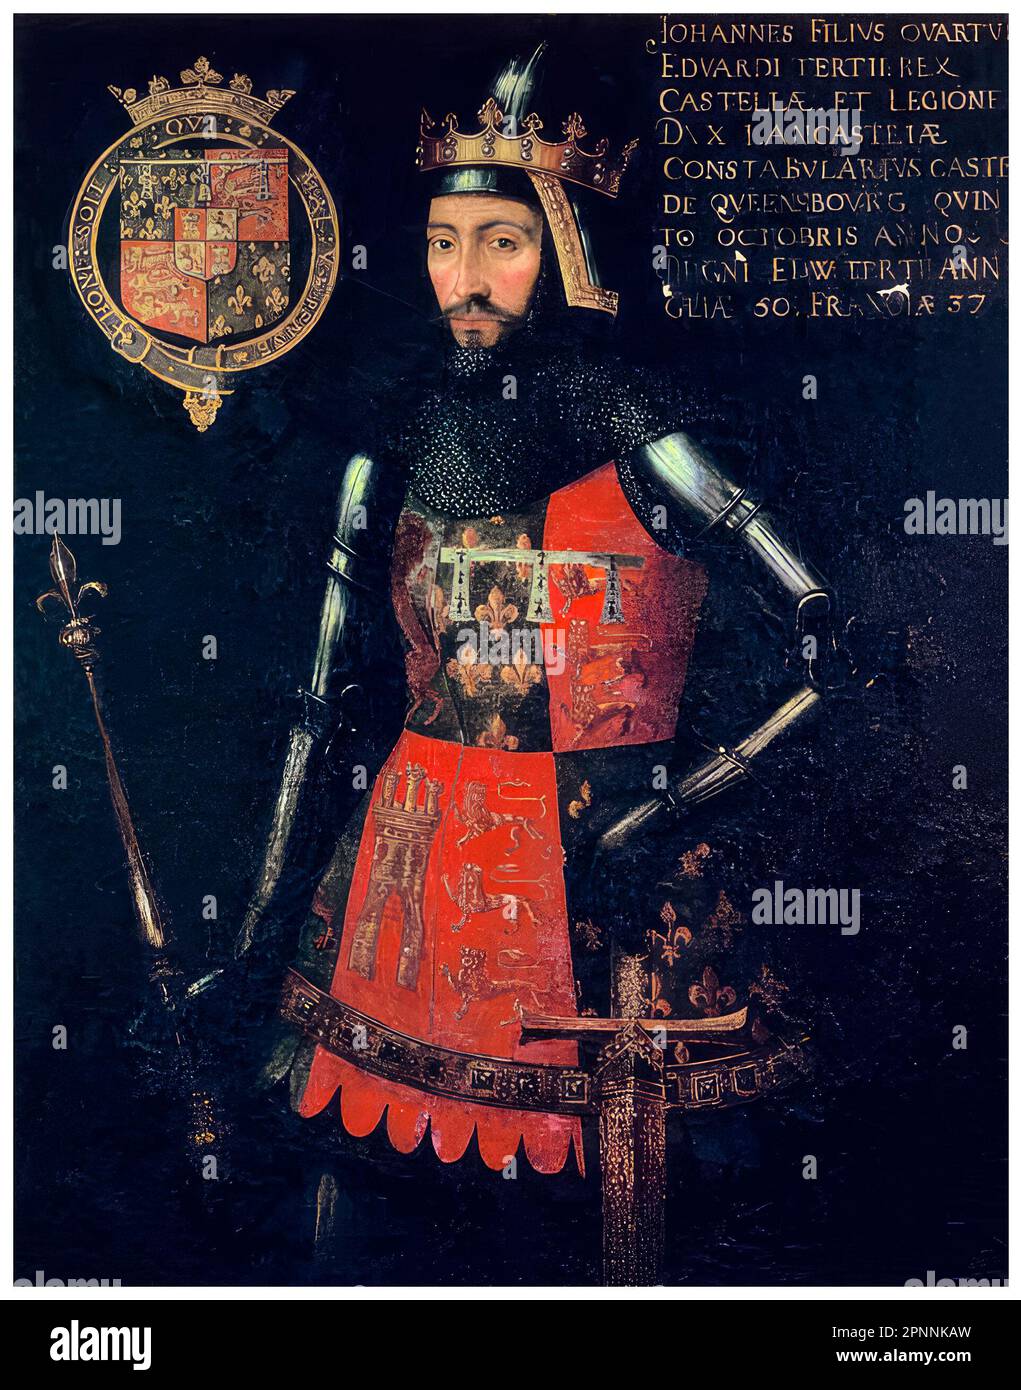 John of Gaunt, Herzog von Lancaster (1340-1399), englischer Prinz aus dem 14. Jahrhundert, Militärführer und Staatsmann. Gründer des Hauses Lancaster, Porträtmalerei in Tempera auf Panel eines unbekannten Künstlers, etwa 1593 Stockfoto